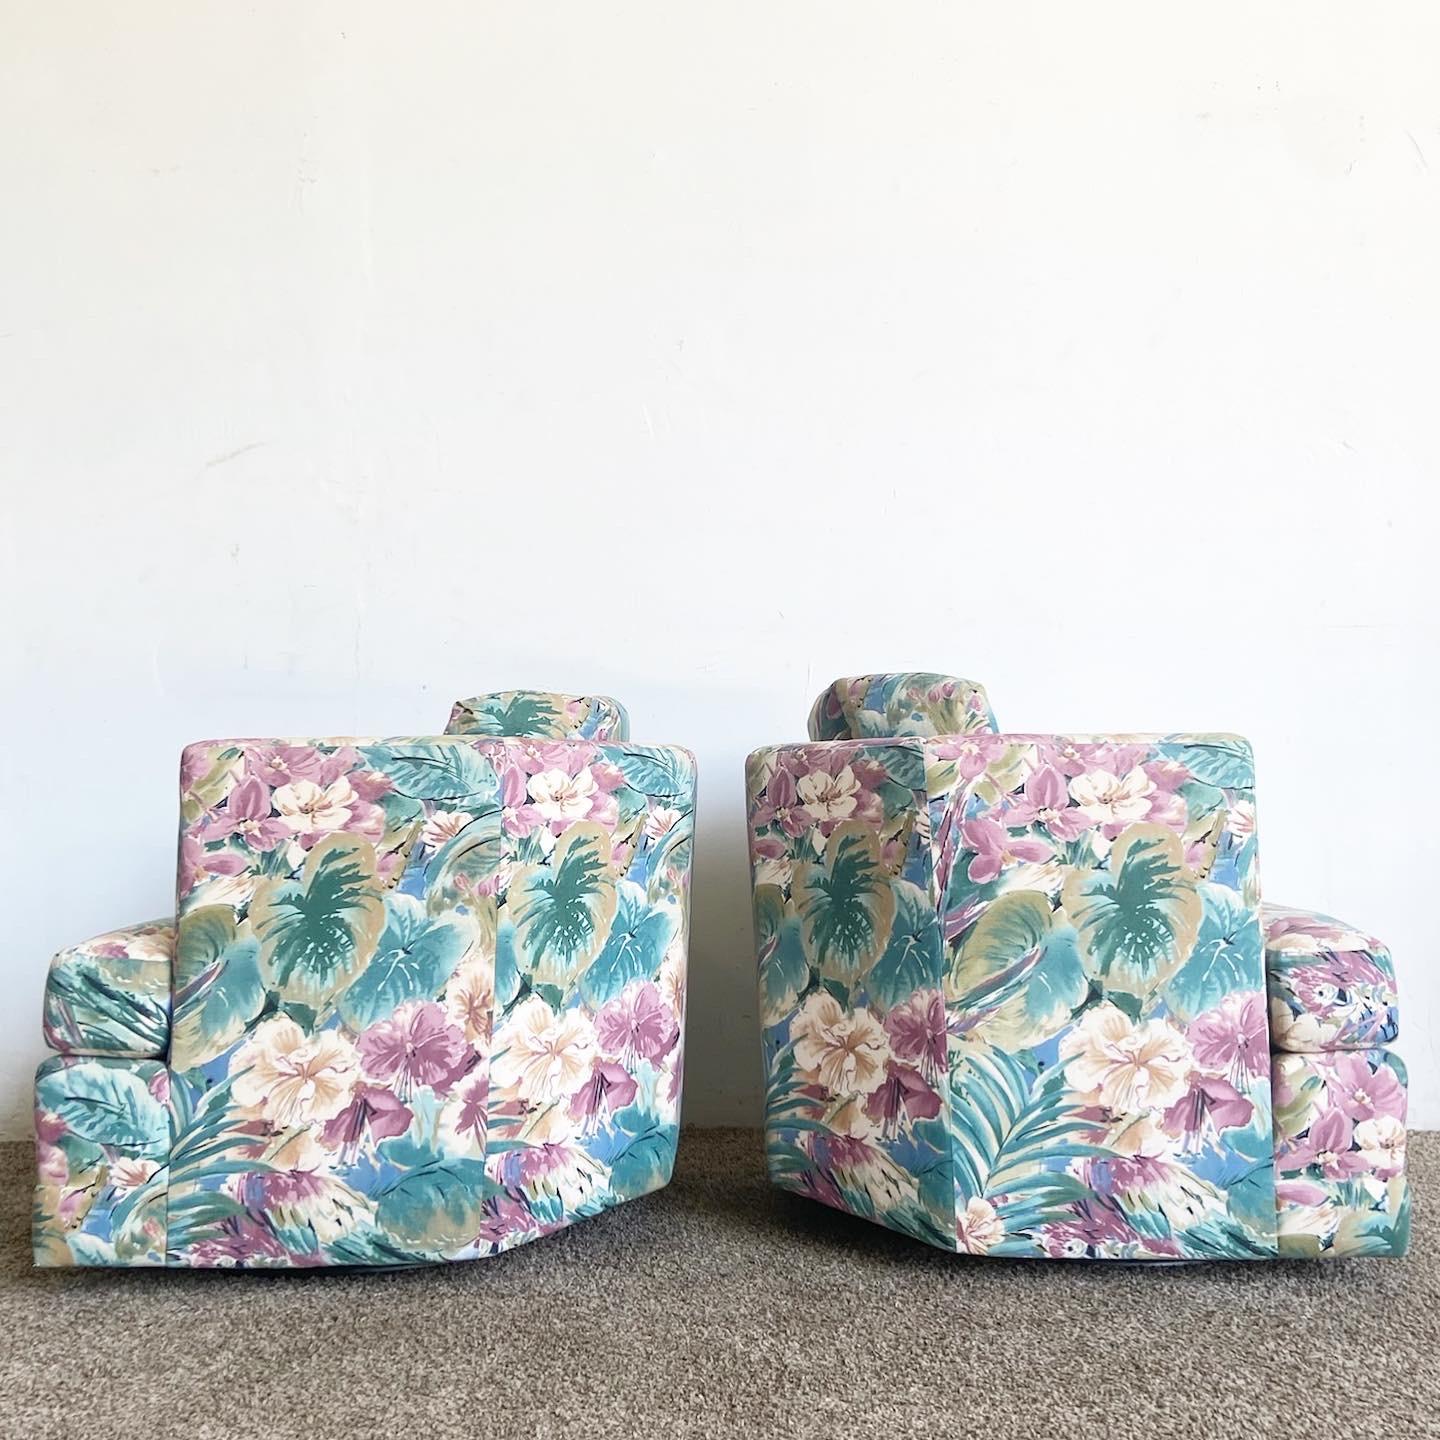 Plongez dans le design vibrant de notre merveilleuse paire de chaises pivotantes postmodernes vintage. Ces chaises sont dotées de dossiers géométriques et d'un revêtement captivant en tissu perroquet et feuillage, ajoutant une touche artistique à